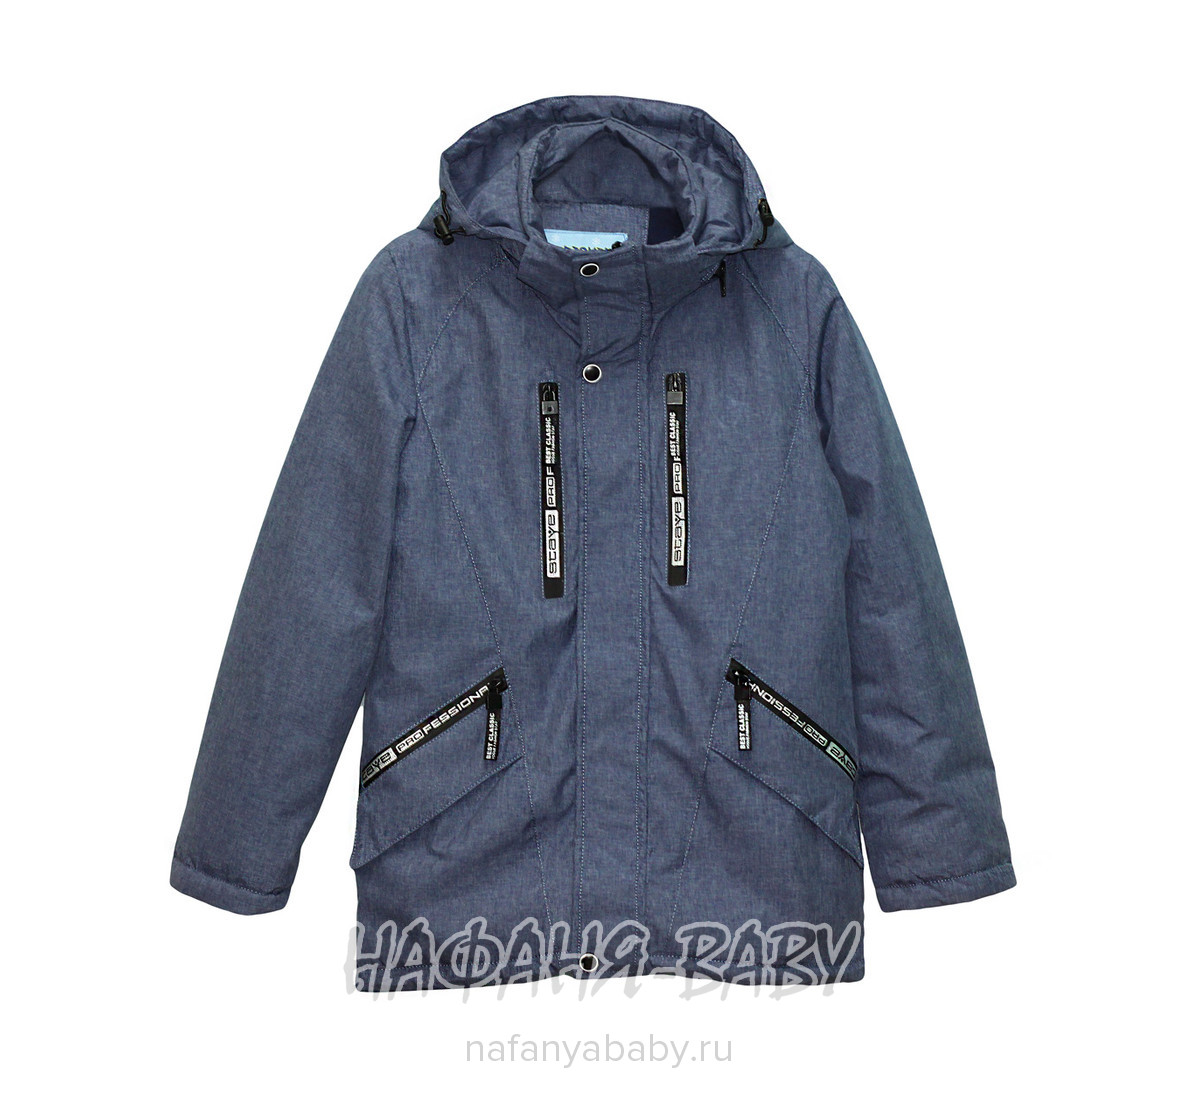 Подростковая демисезонная куртка WEISHIDO, купить в интернет магазине Нафаня. арт: 1882.